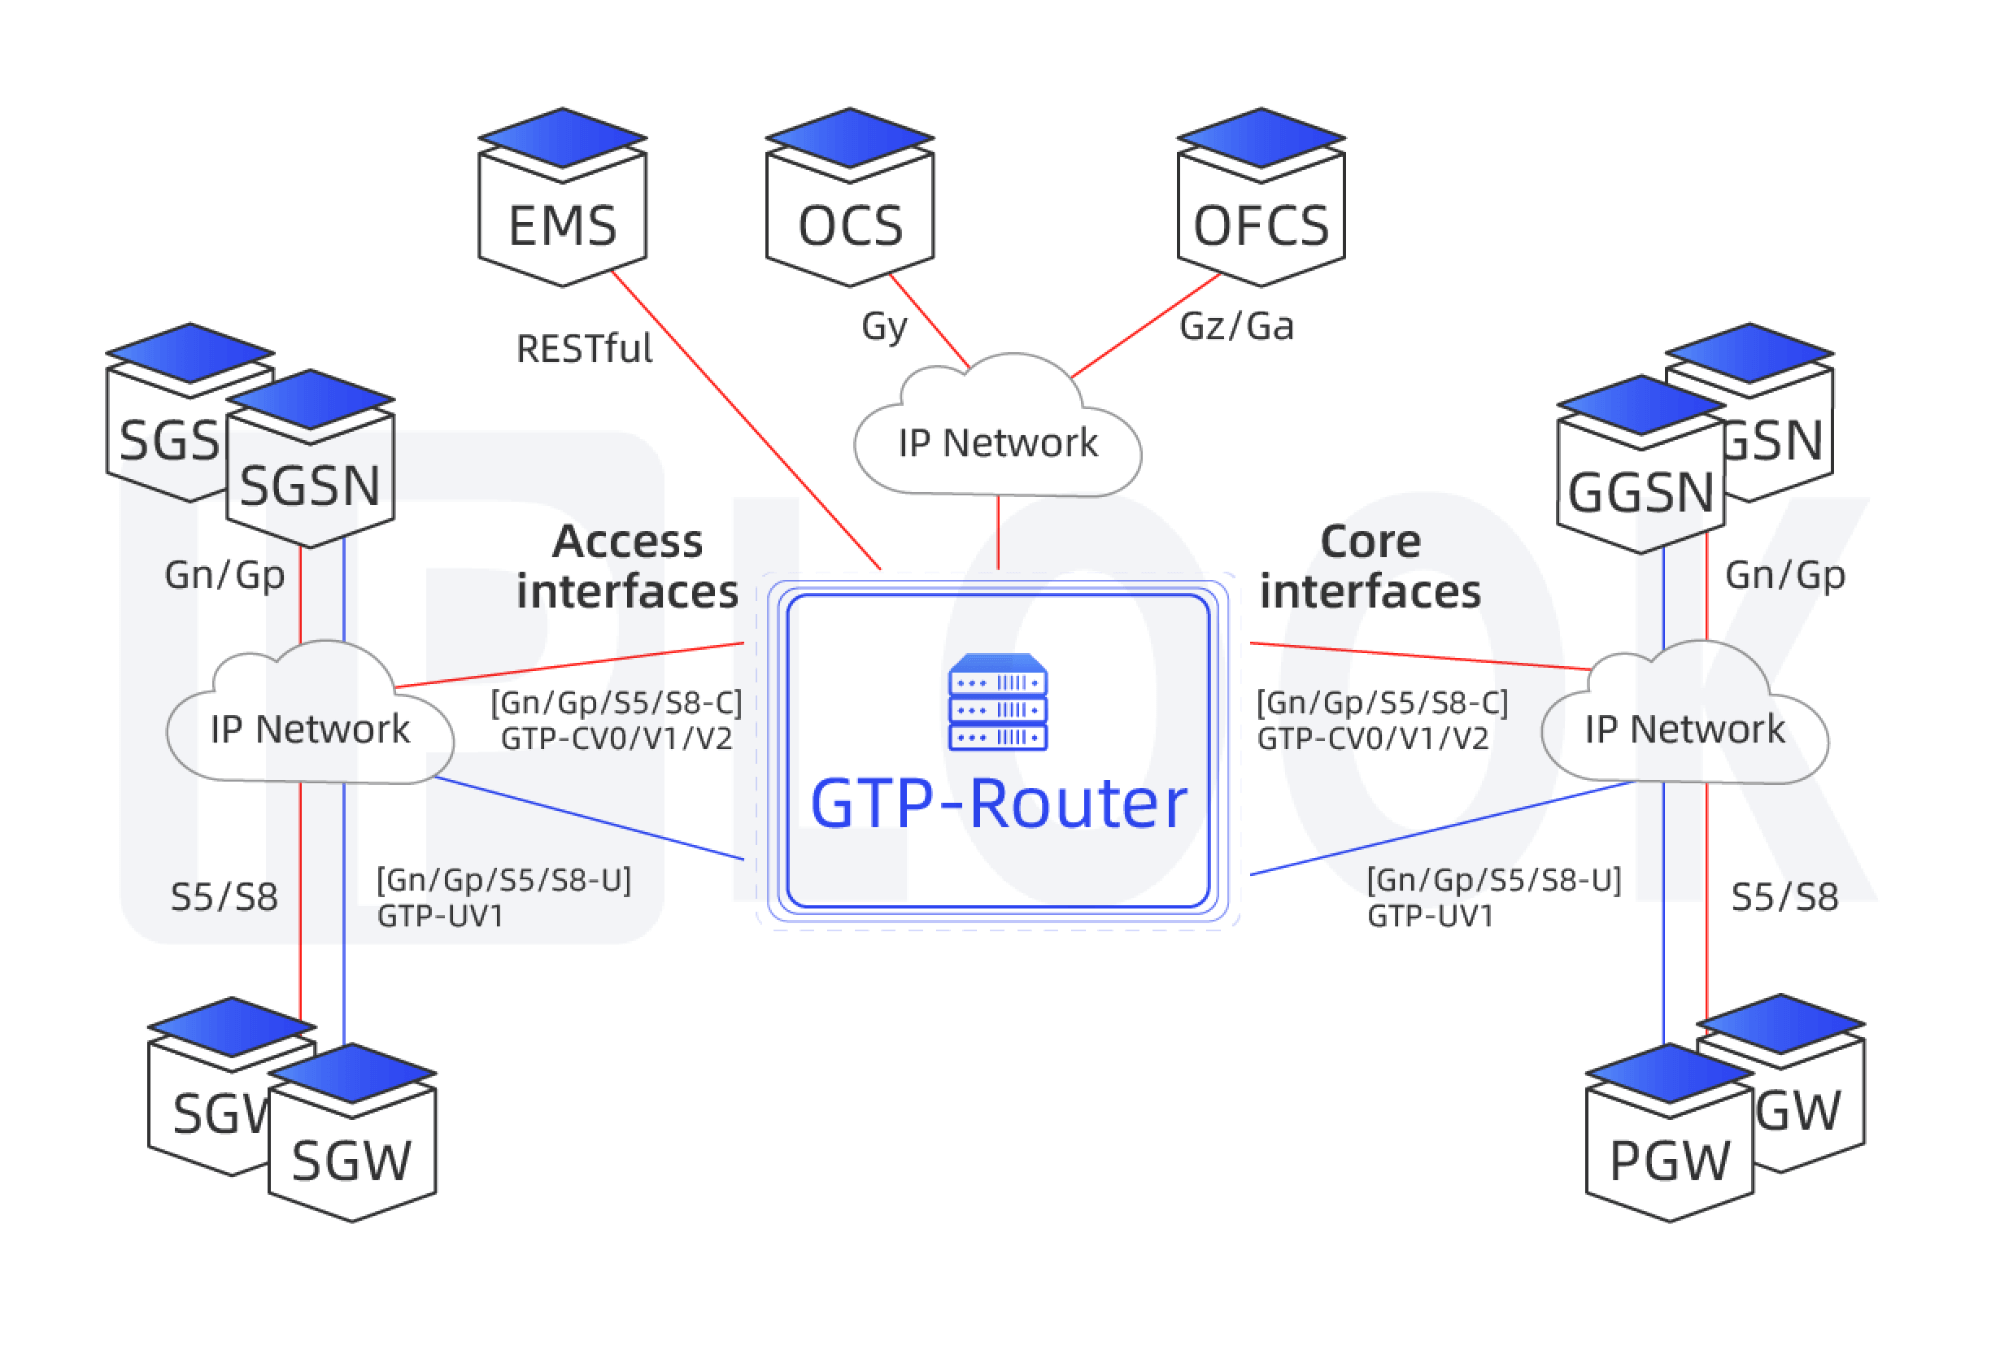 Enrutador de protocolo de tunelización GPRS (enrutador GTP)